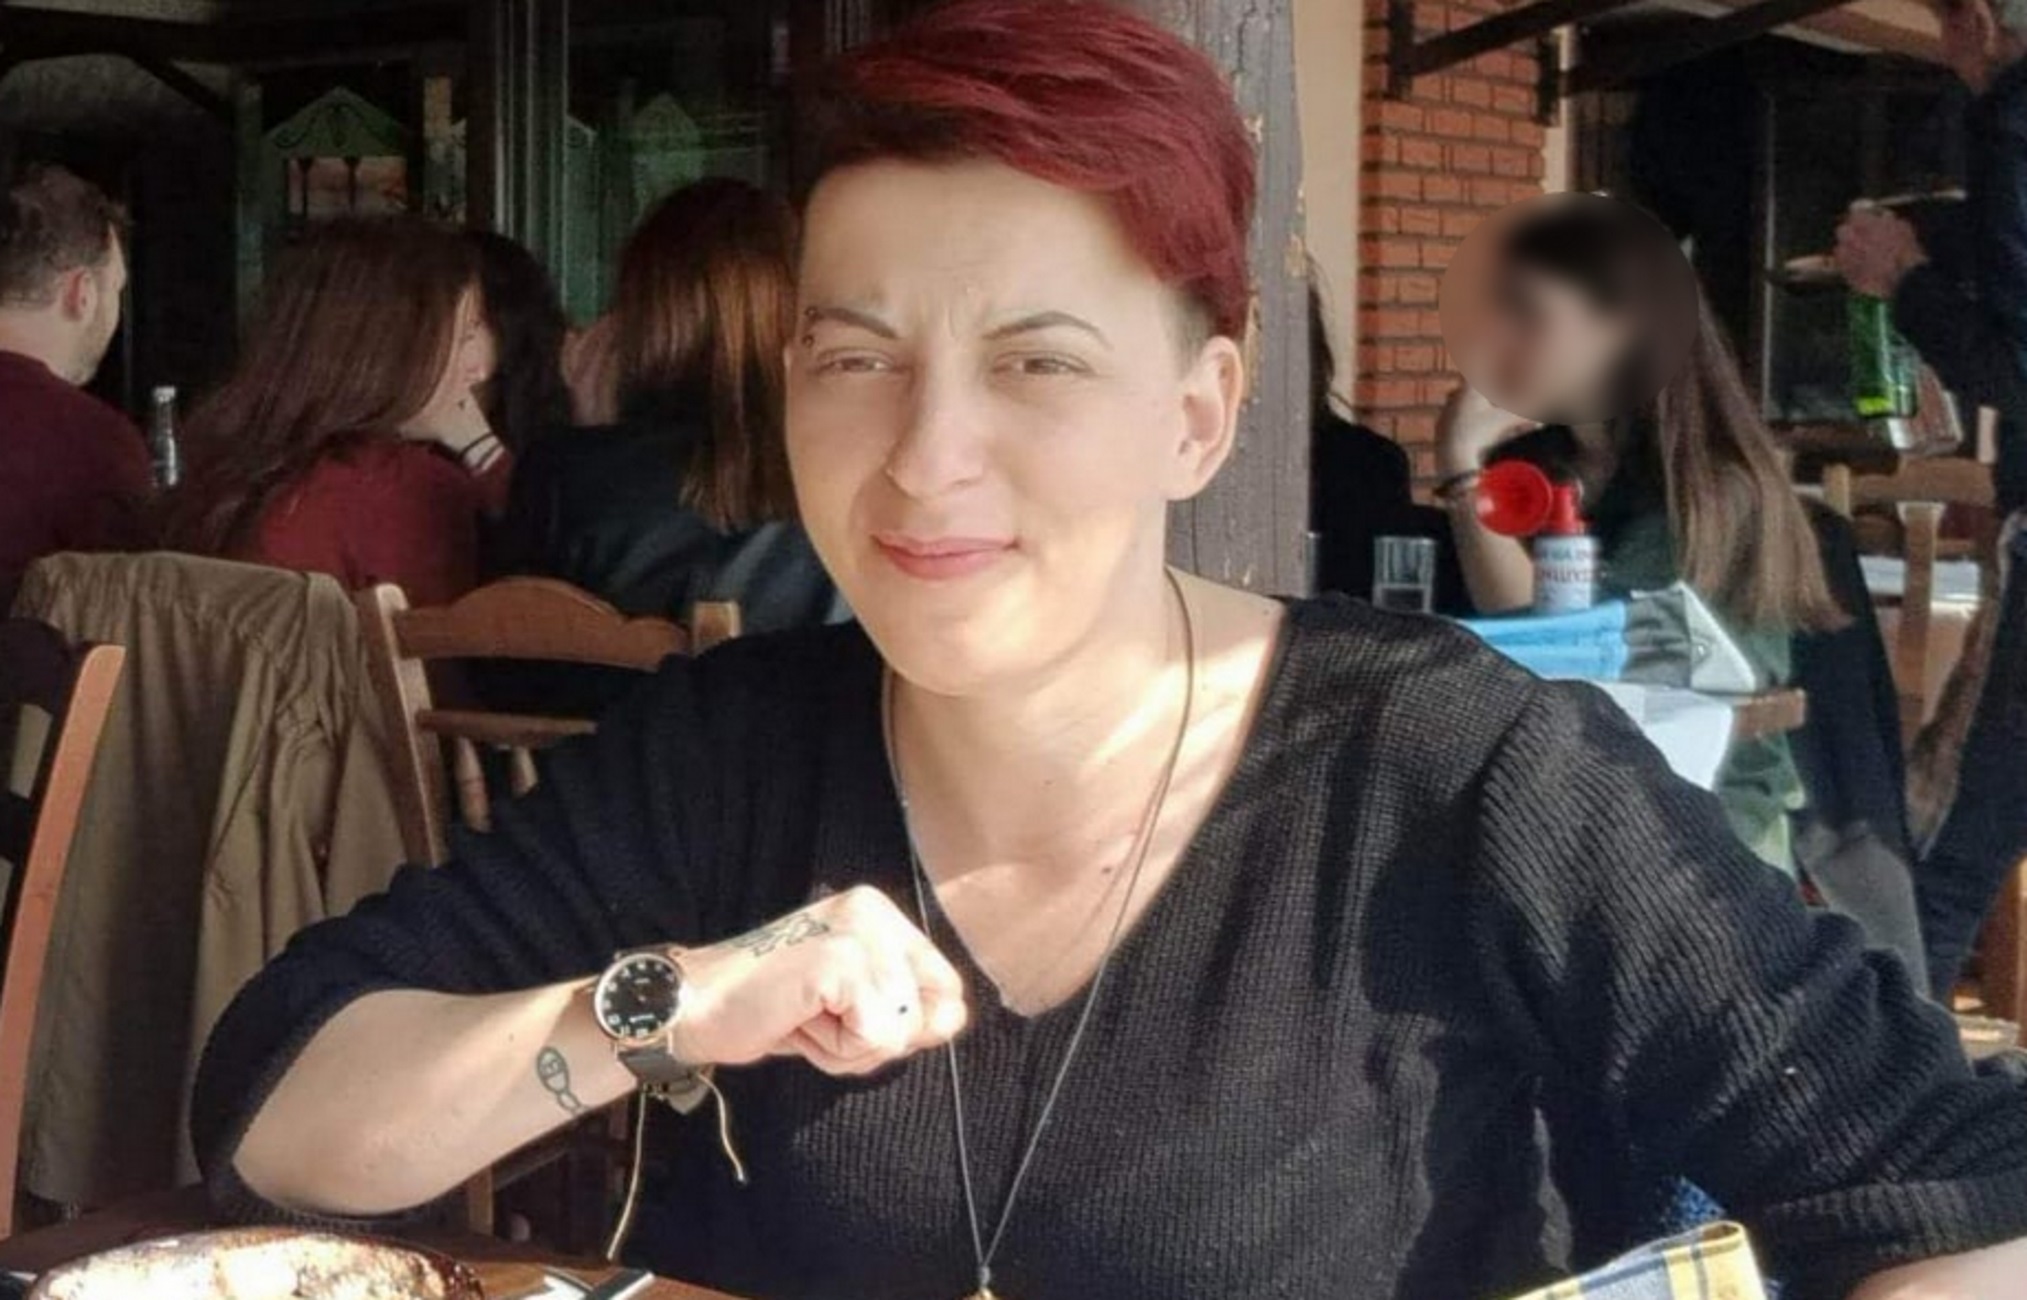 Χαλκιδική: Η αυτοκτονία, το σενάριο για ερωτική απογοήτευση και το θρίλερ με την εξαφάνιση της νεκρής γυναίκας